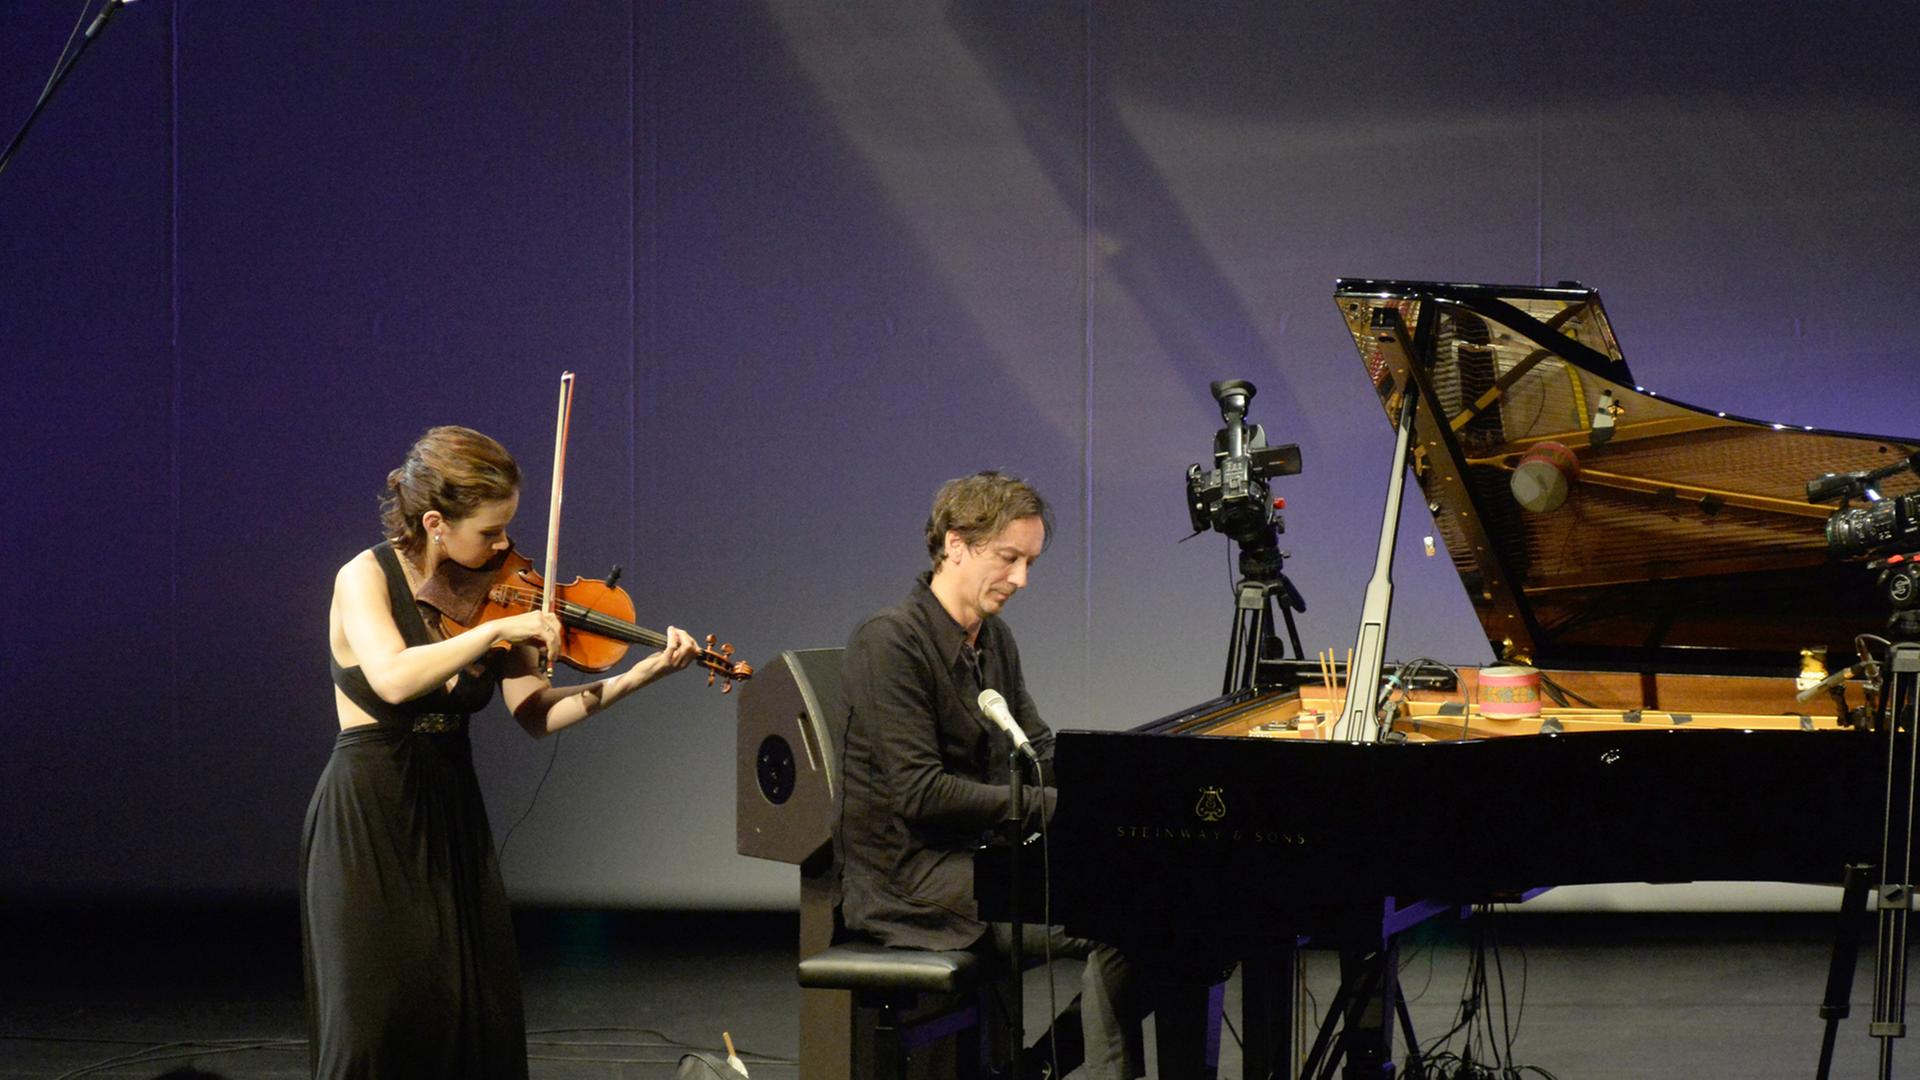 Die Violinistin Hilary Hahn und Volker Bertelmann / Hauschka bei einem Auftritt in München